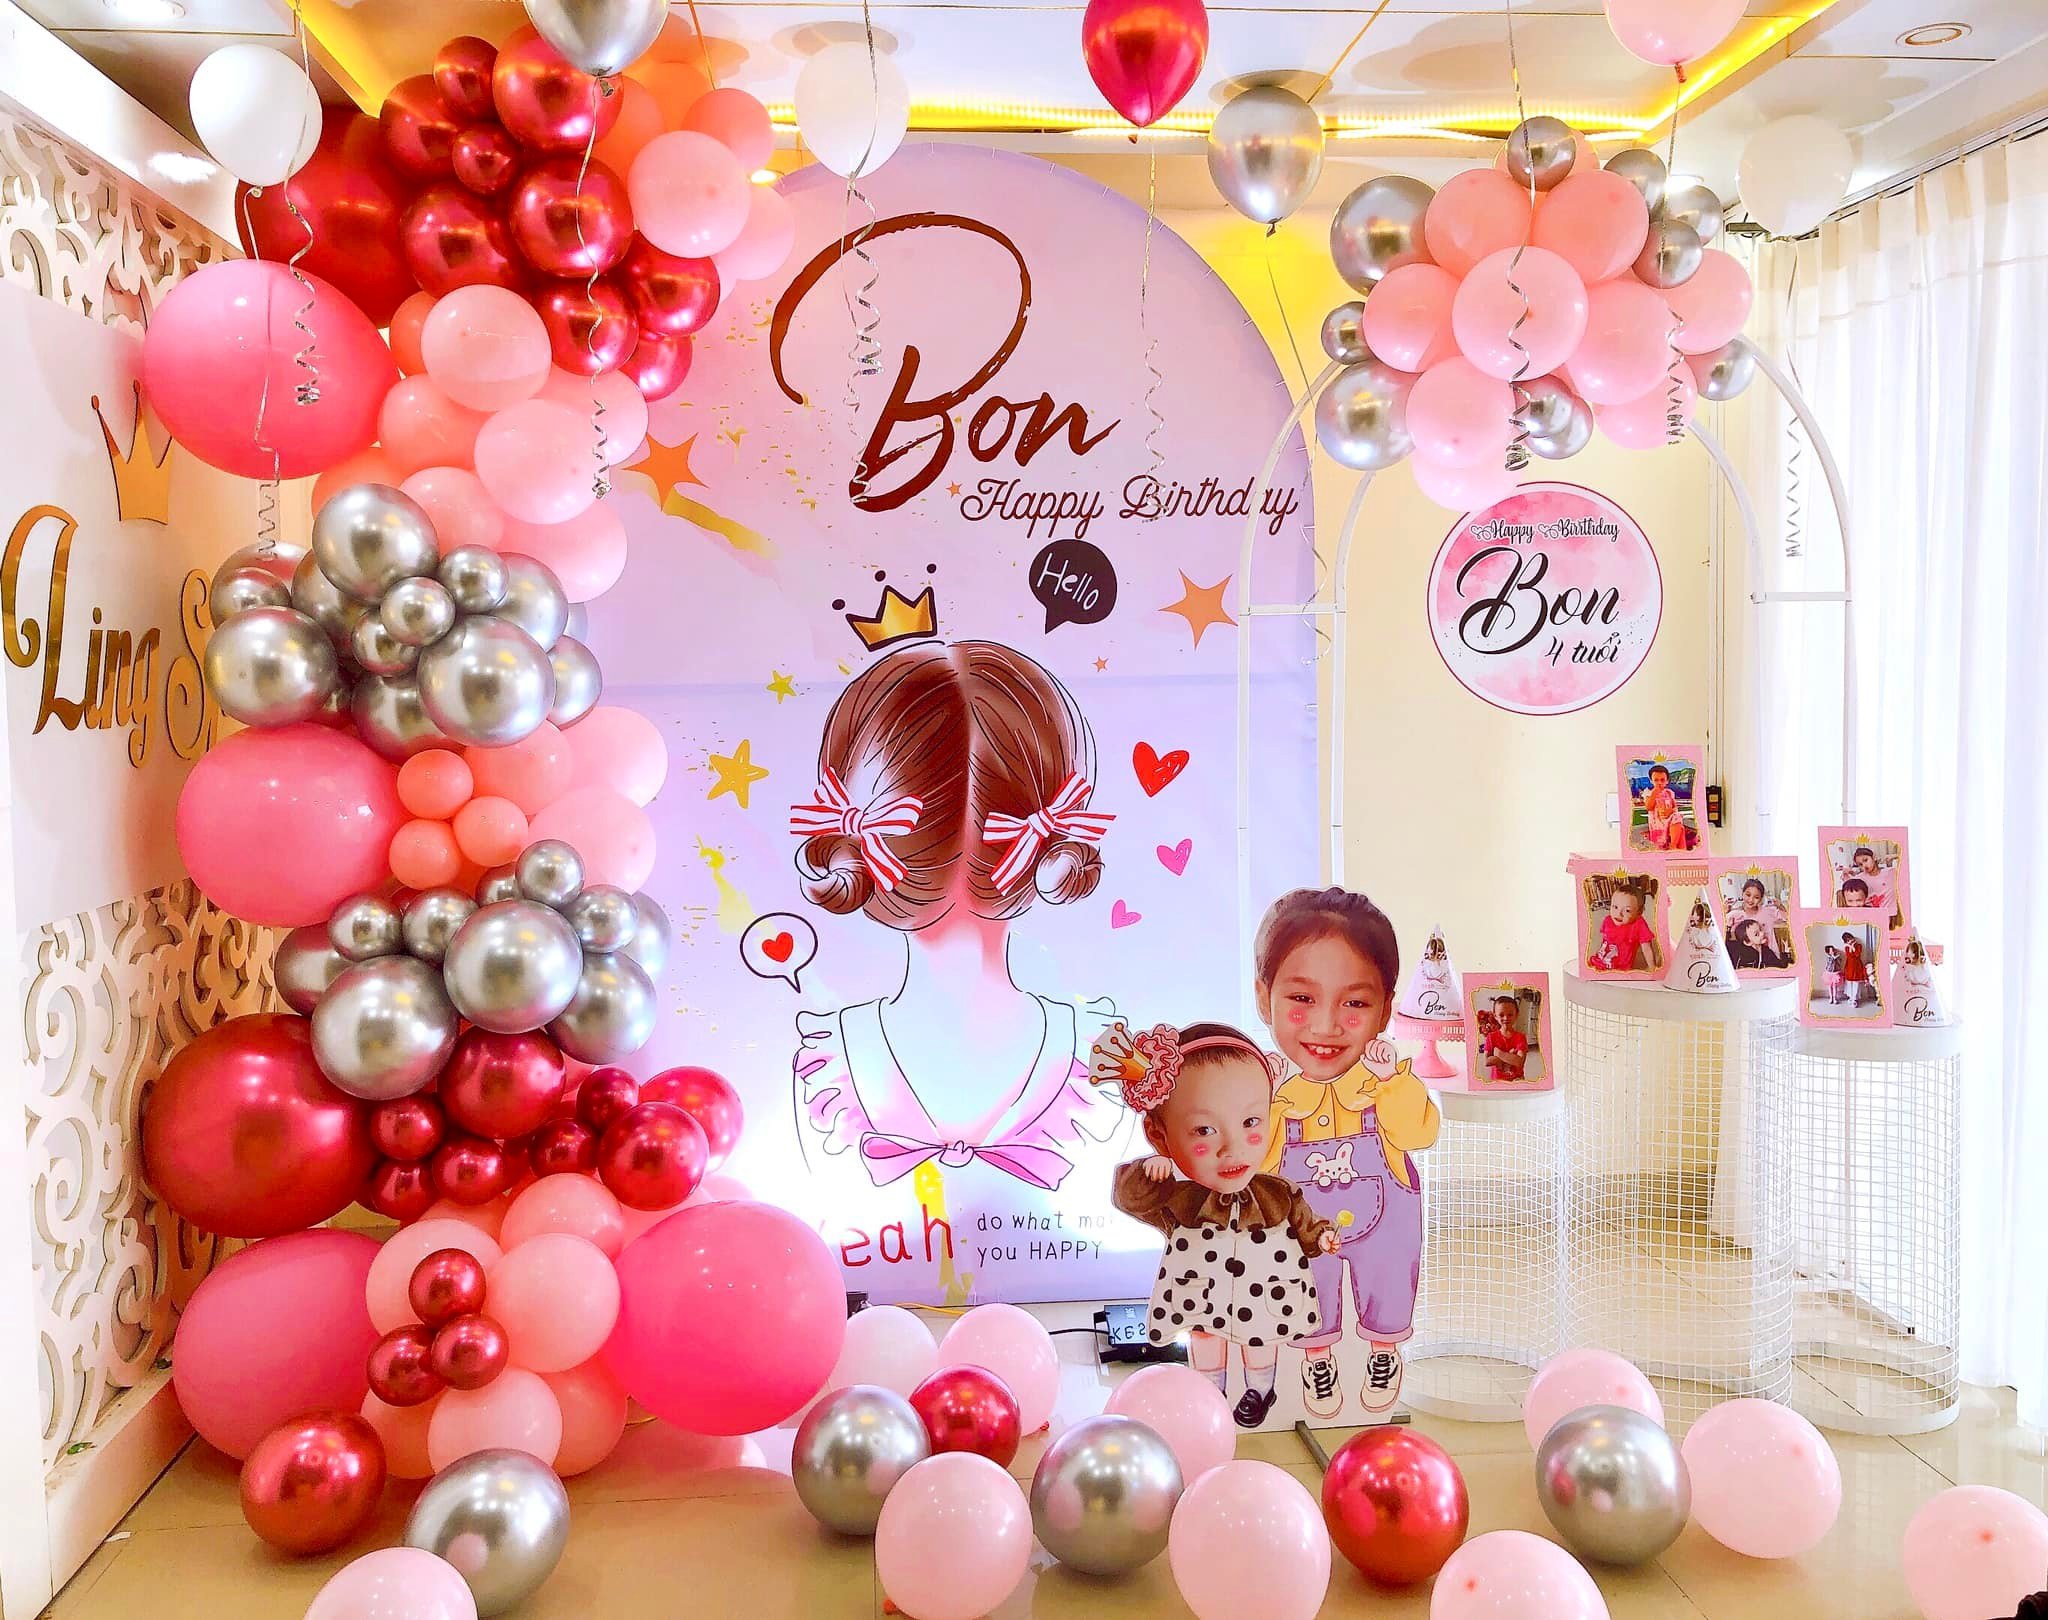 Trang trí sinh nhật cho bé gái 4 tuổi tại Hà Nội - Chill decor